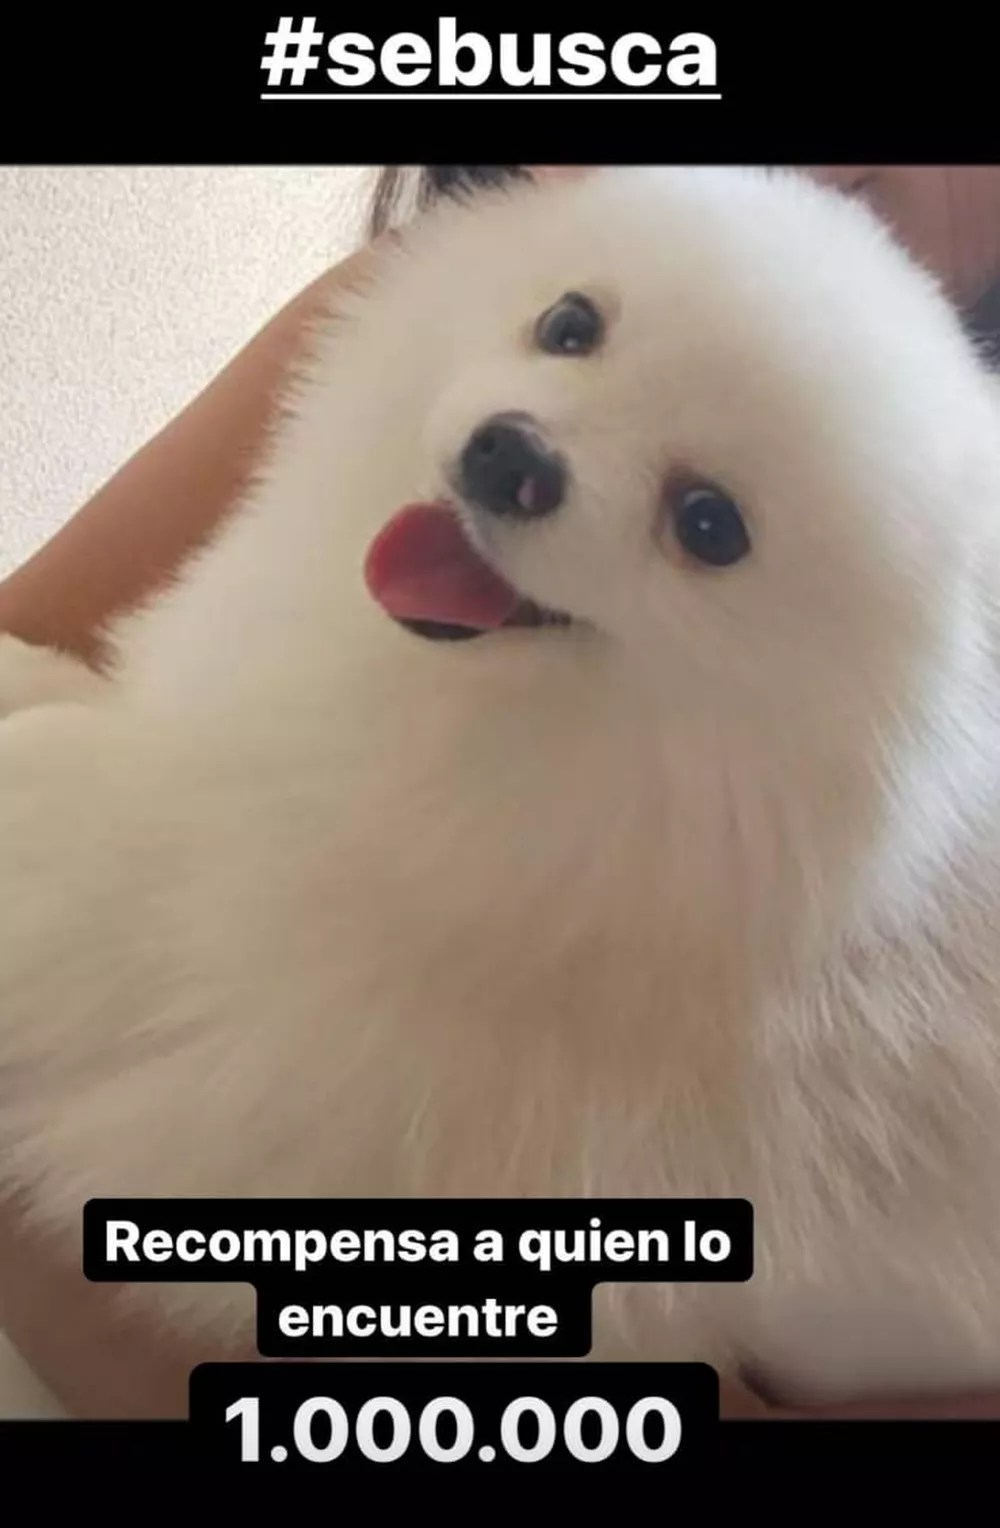 Recompensa: um dos maiores ídolos chilenos, Vidal postou foto do cão